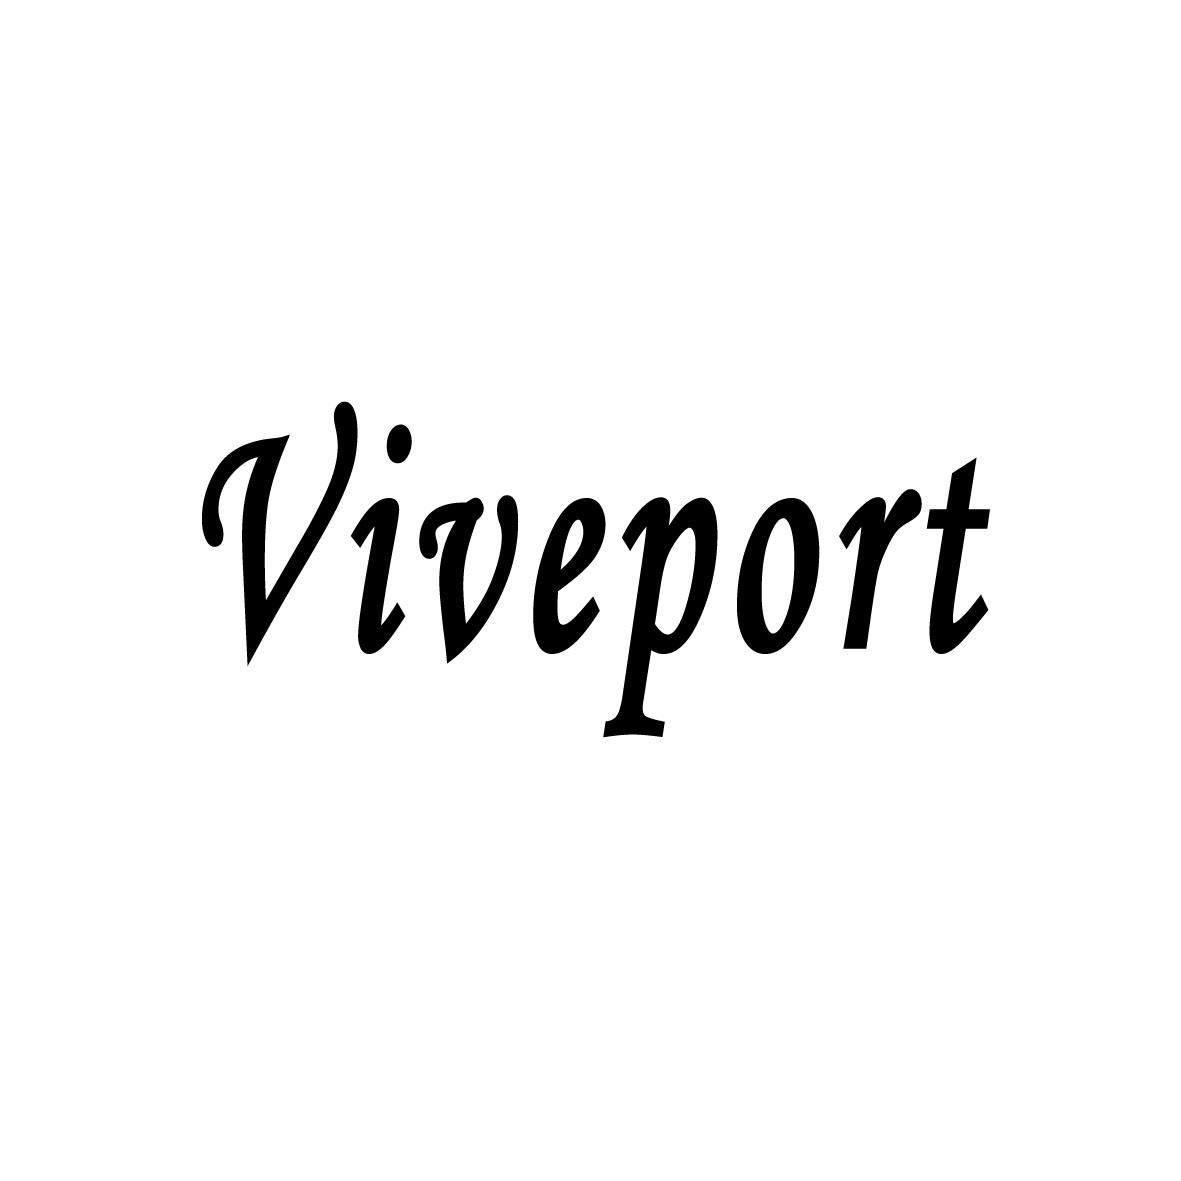 VIVEPORT